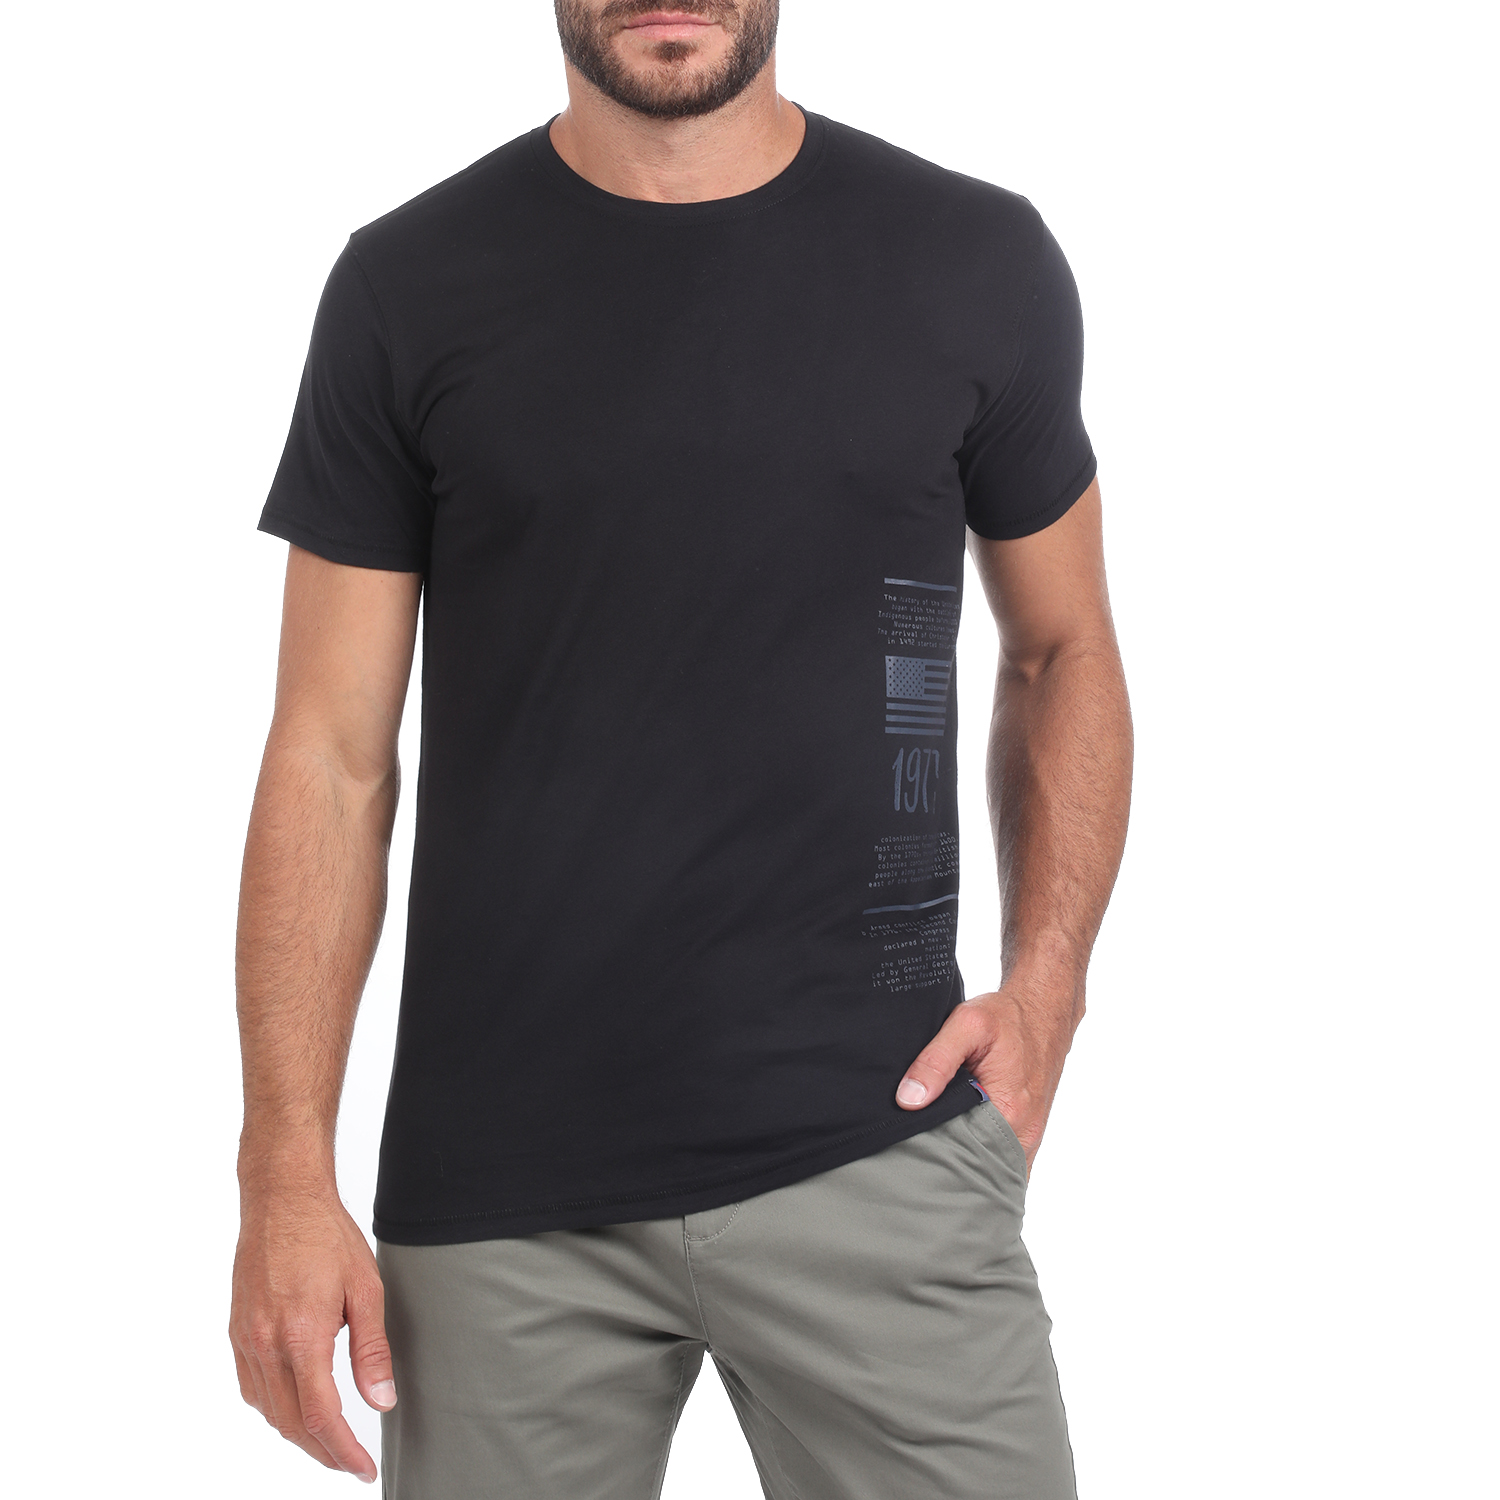 Ανδρικά/Ρούχα/Μπλούζες/Κοντομάνικες BATTERY - Ανδρικό t-shirt BATTERY μαύρο